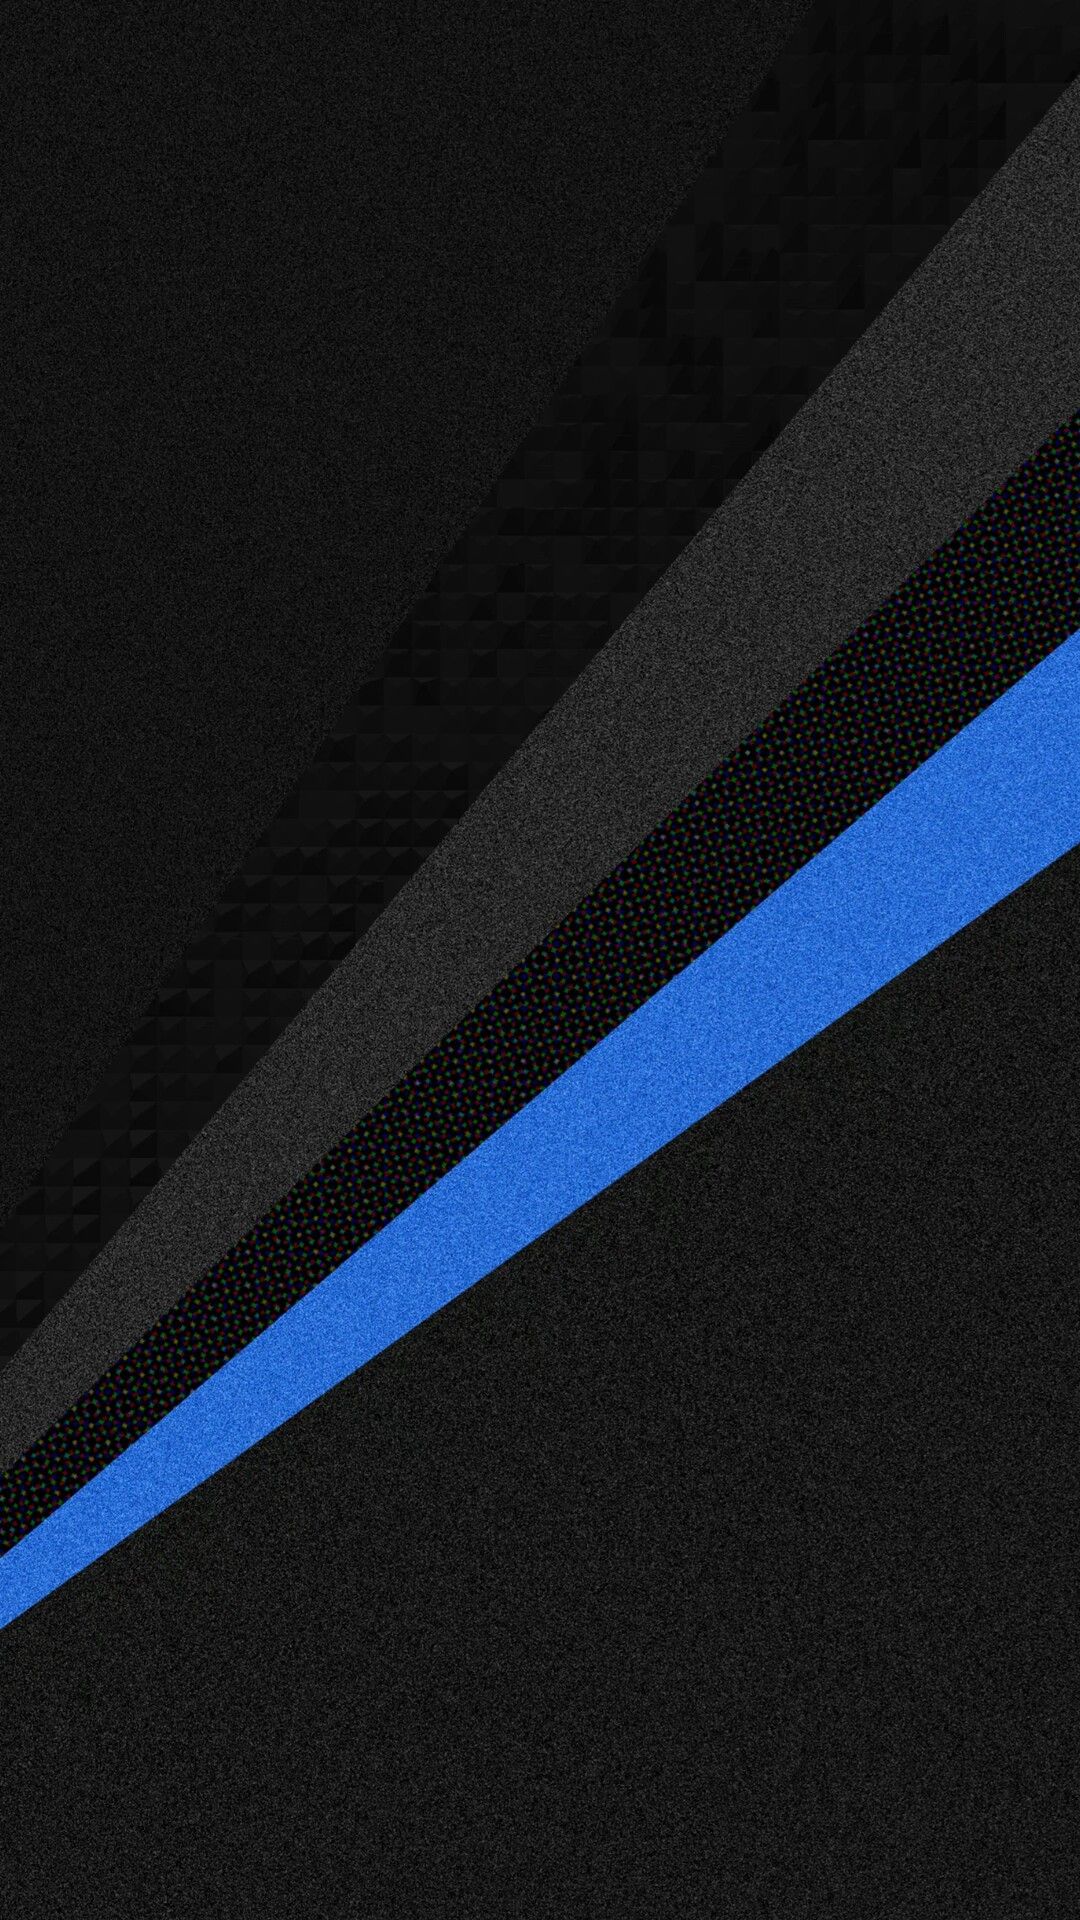 Full HD Dark Blue Wallpaper For Mobile